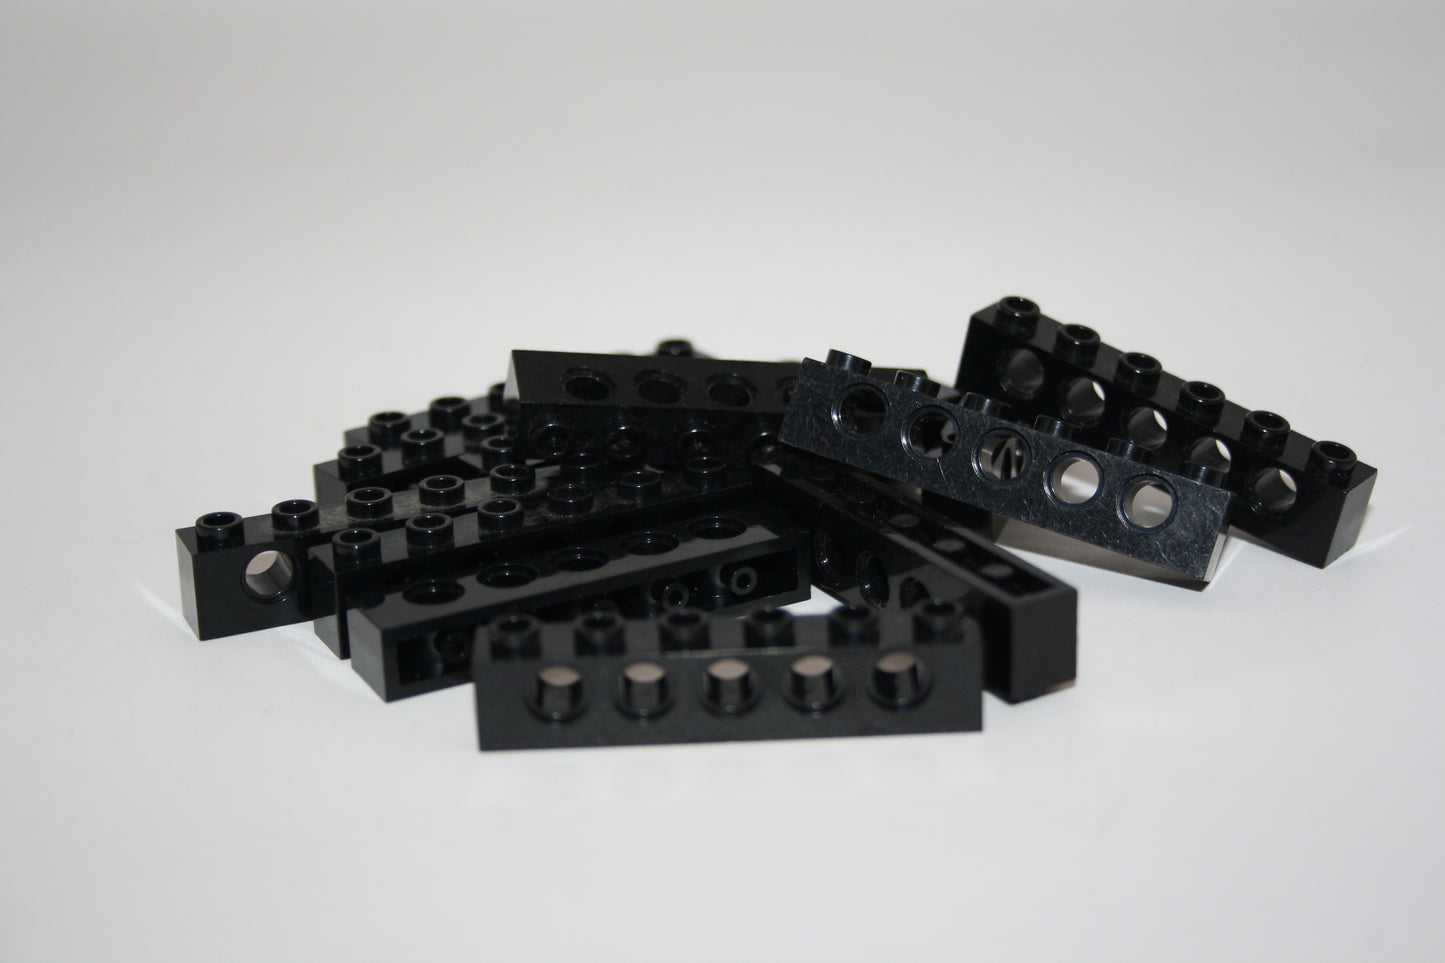 LEGO® Technik - 1x6 Brick/Stein/Lochbalken mit Loch - schwarz - 3894 - 6-13x Sparpaket